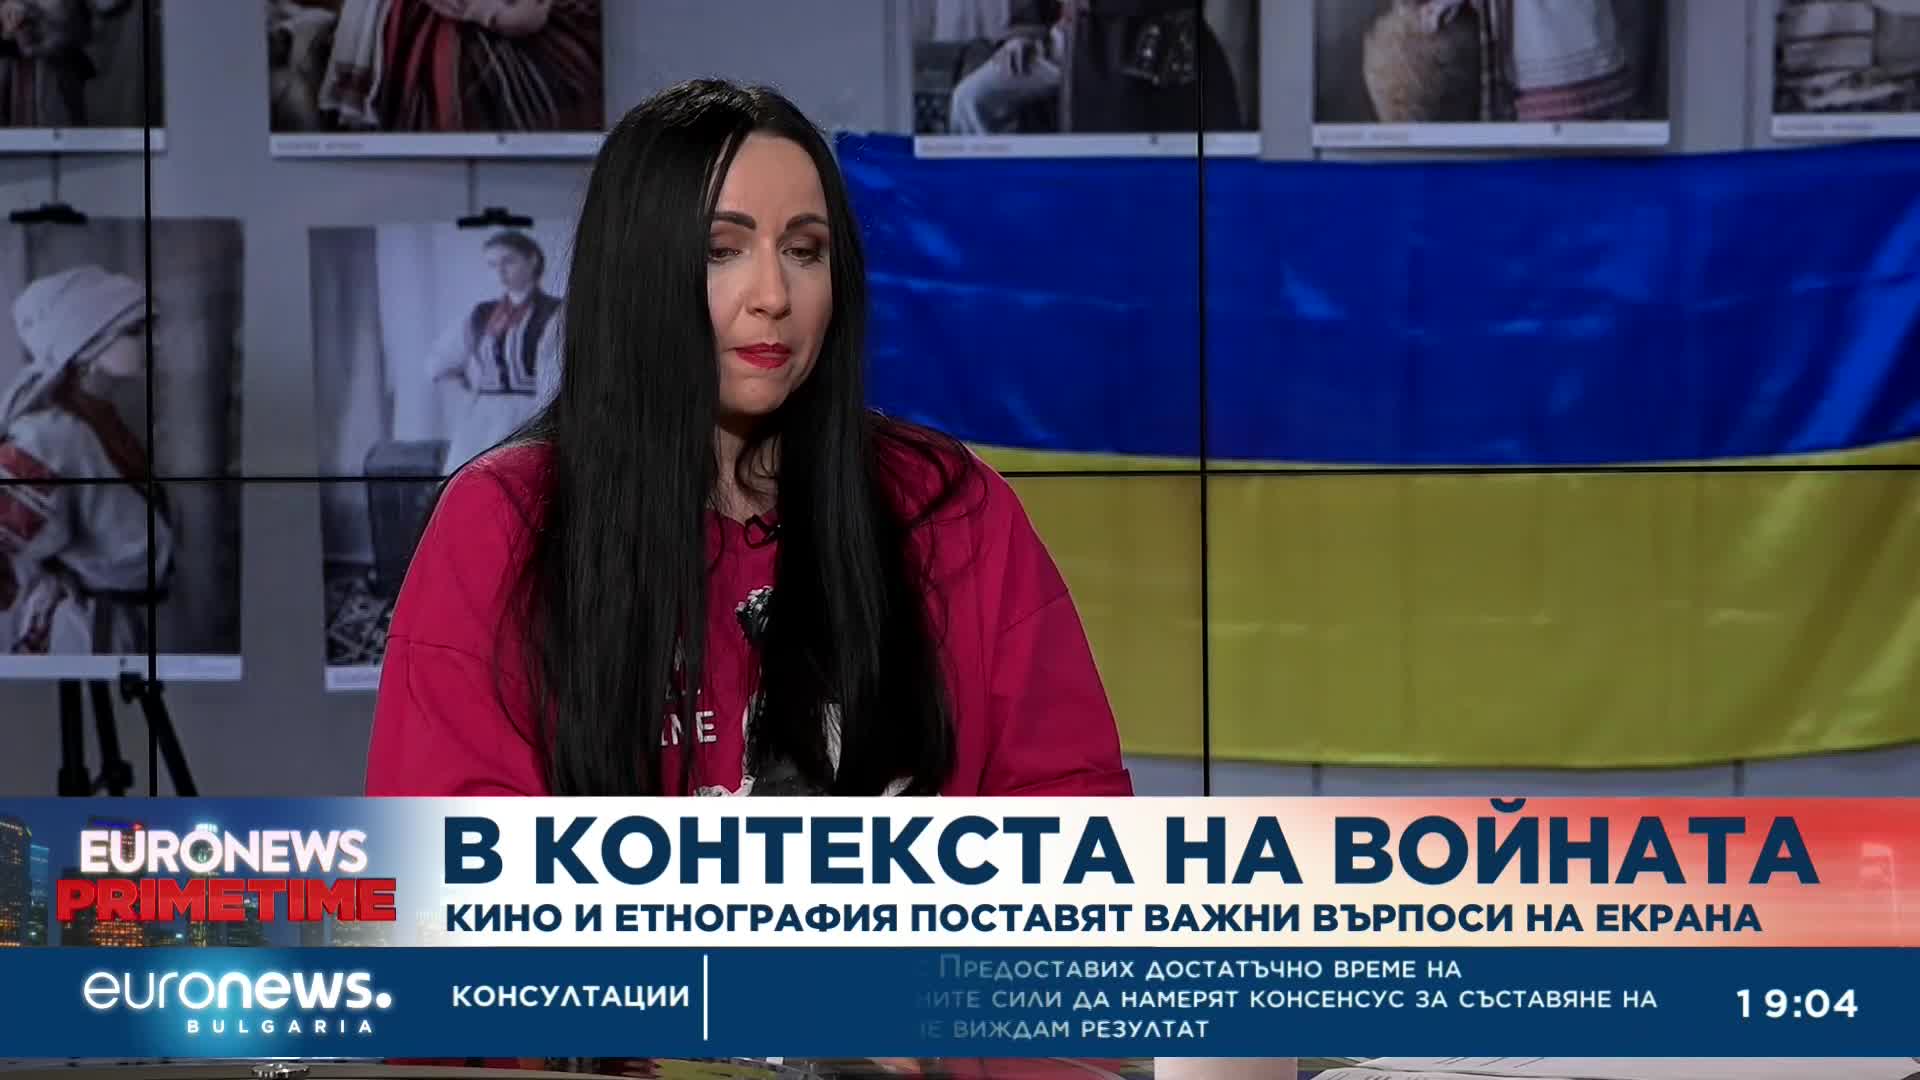 Таня Станева: Украинските българи сме наранени от действията на политиците в България